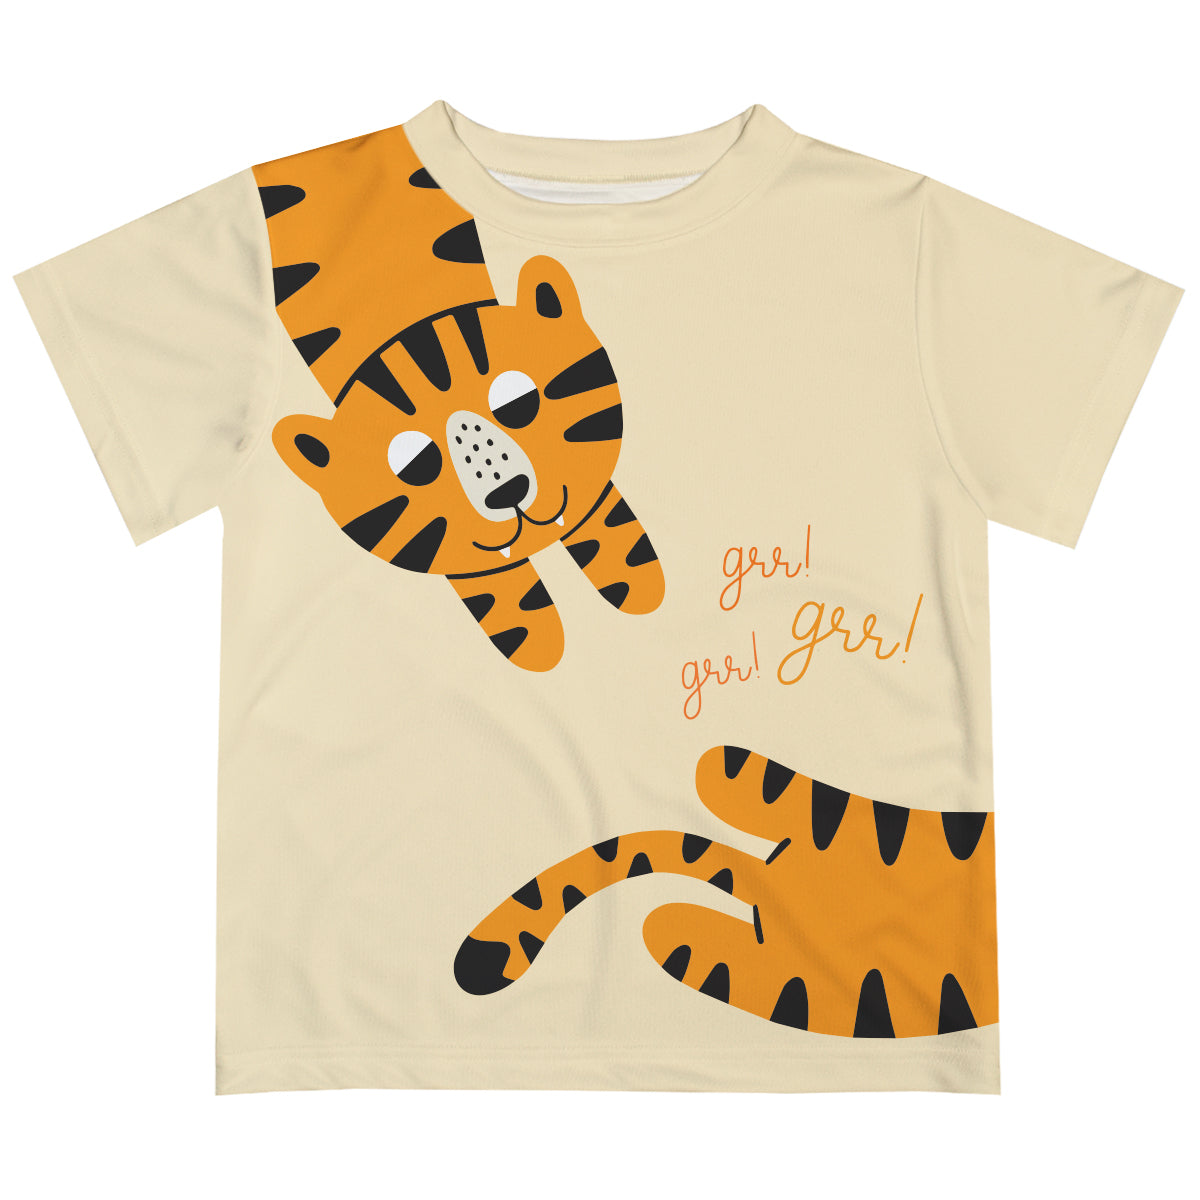 Grr Tiger Beige Short Sleeve Tee Shirt